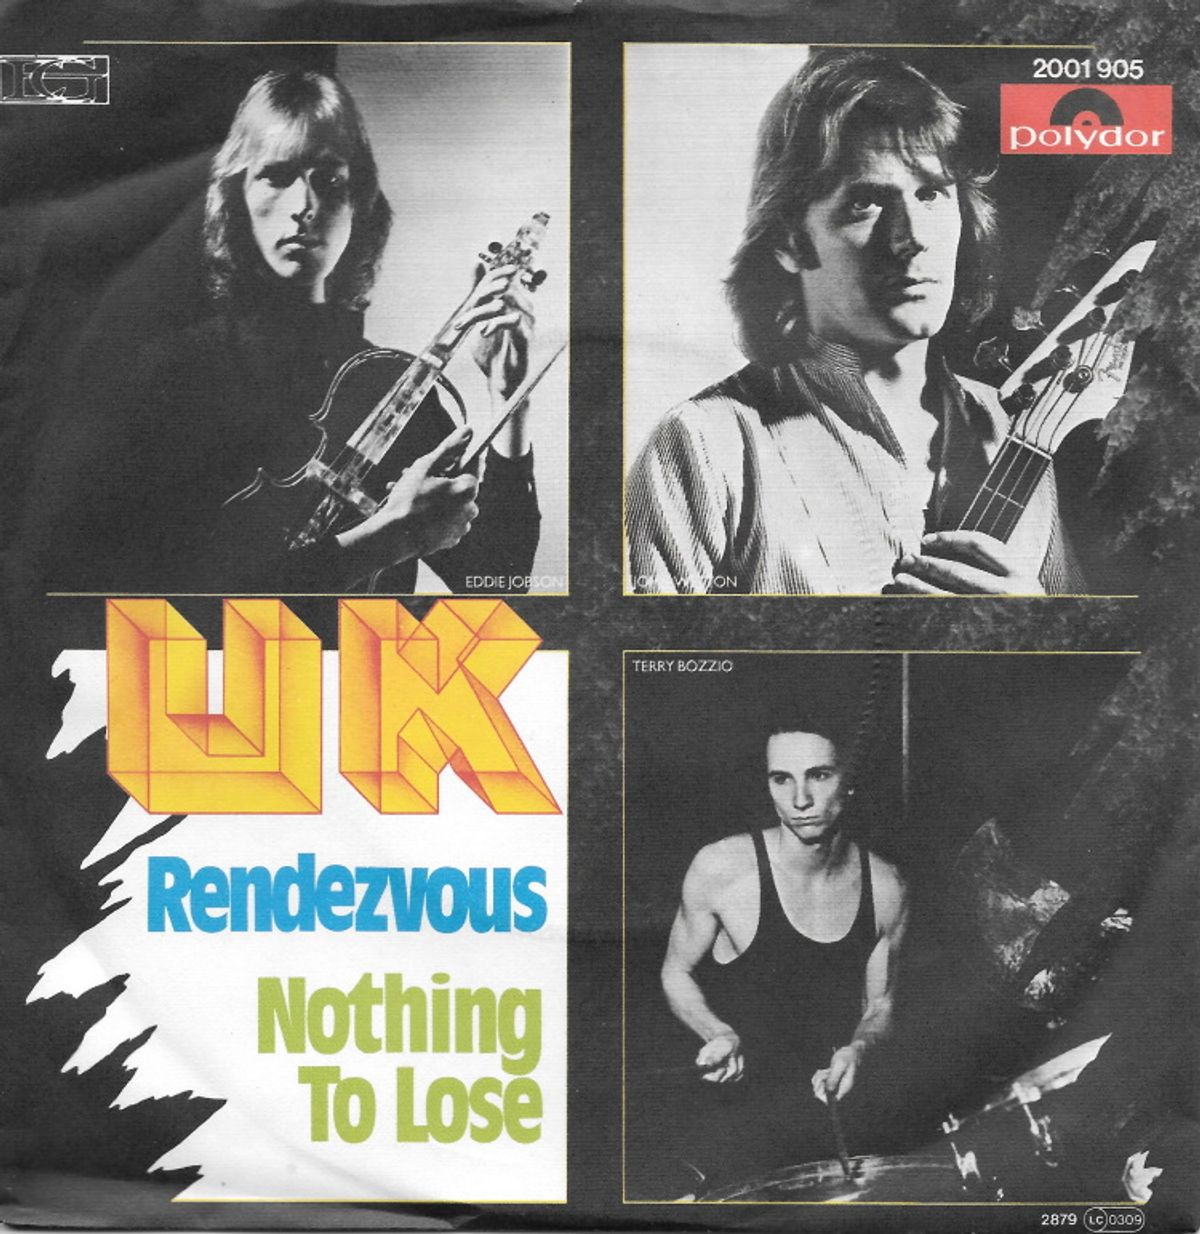 #RoxyMusicRules - UK - Rendezvous 6:02 (1979)